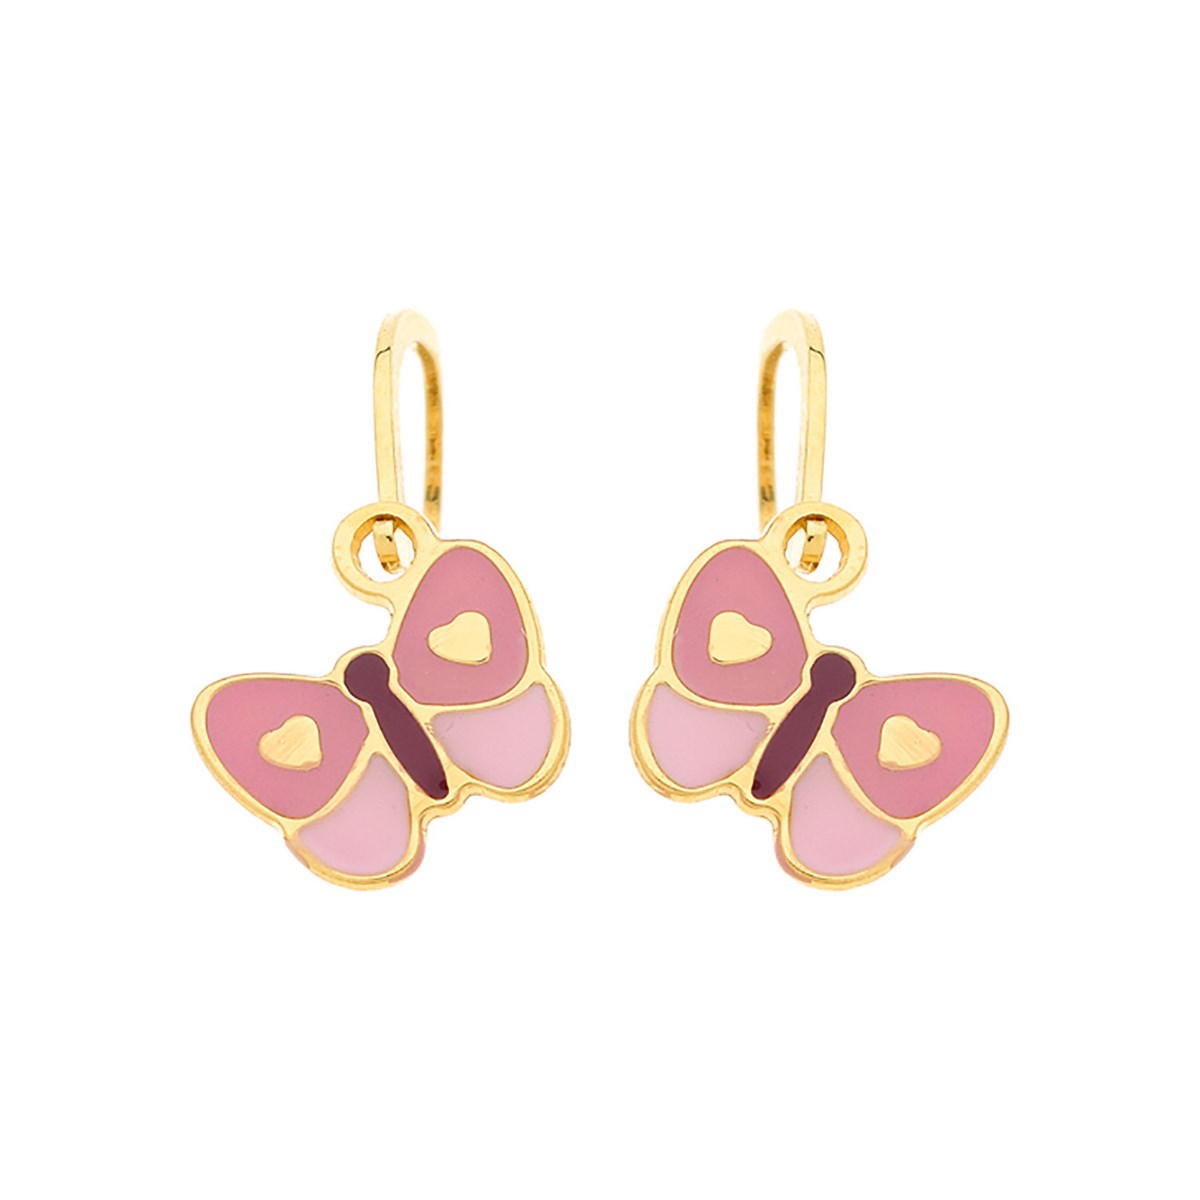 Boucles d'oreilles brisures papillons rose or jaune